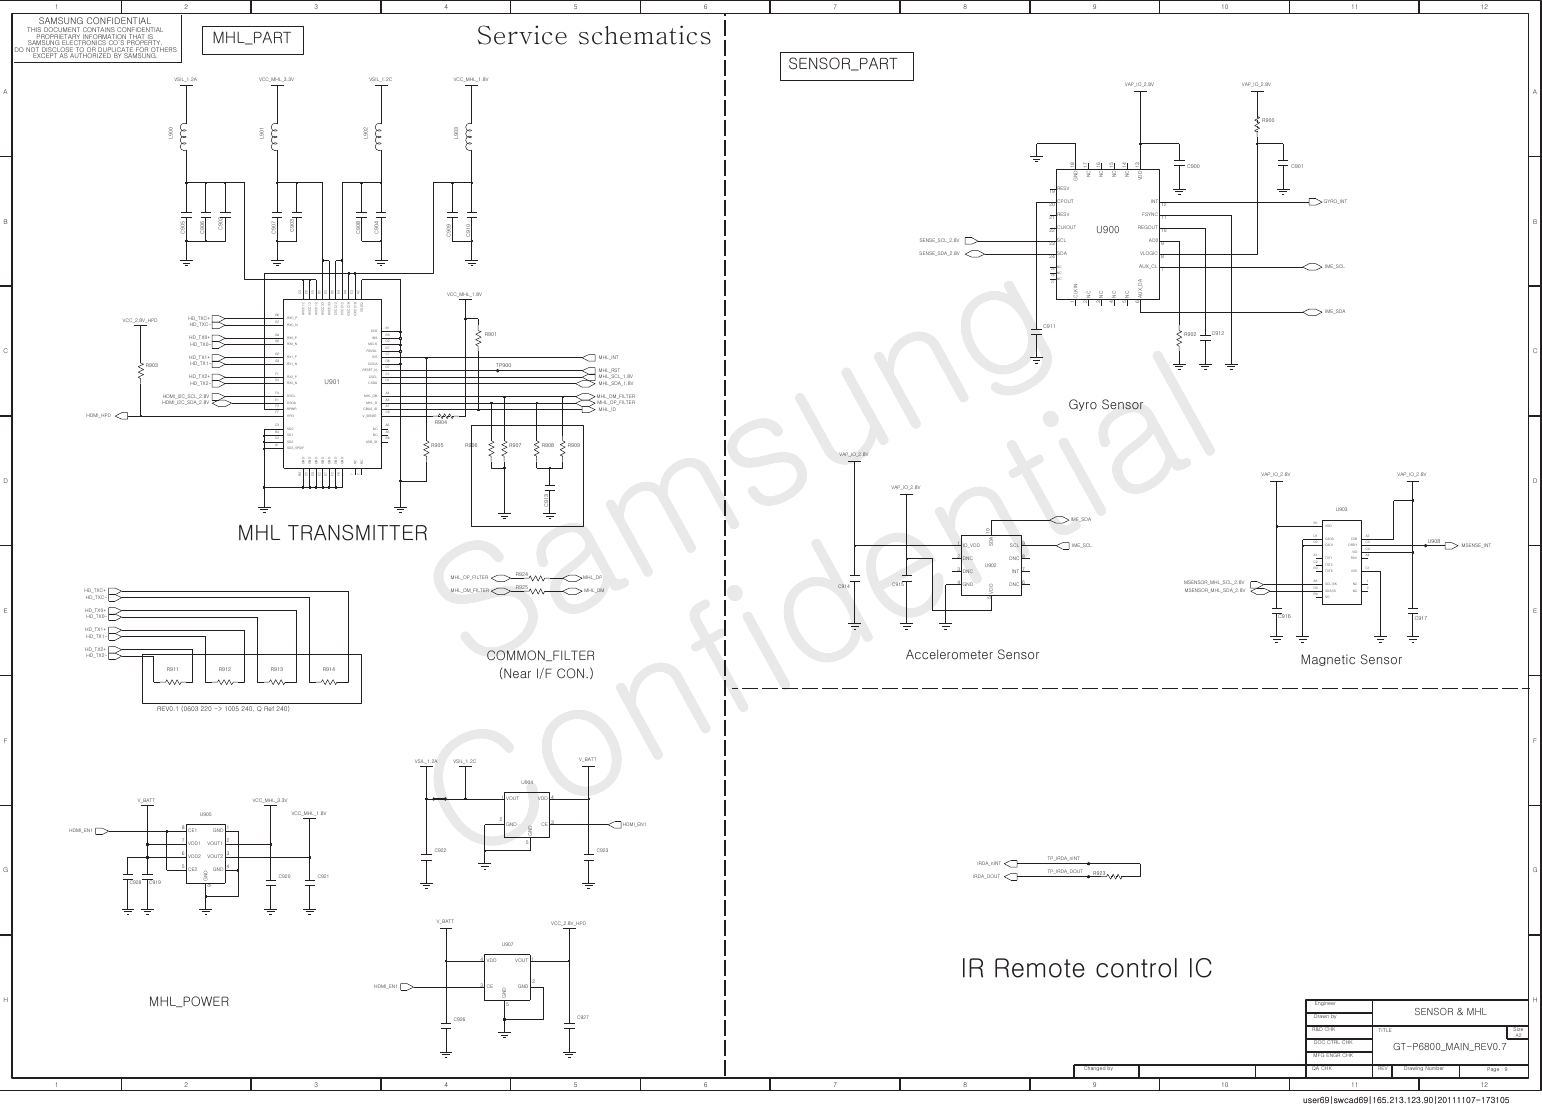 Page 9 of 12 - Samsung GT-P6800 - Schematics. Www.s-manuals.com. Service Schematics